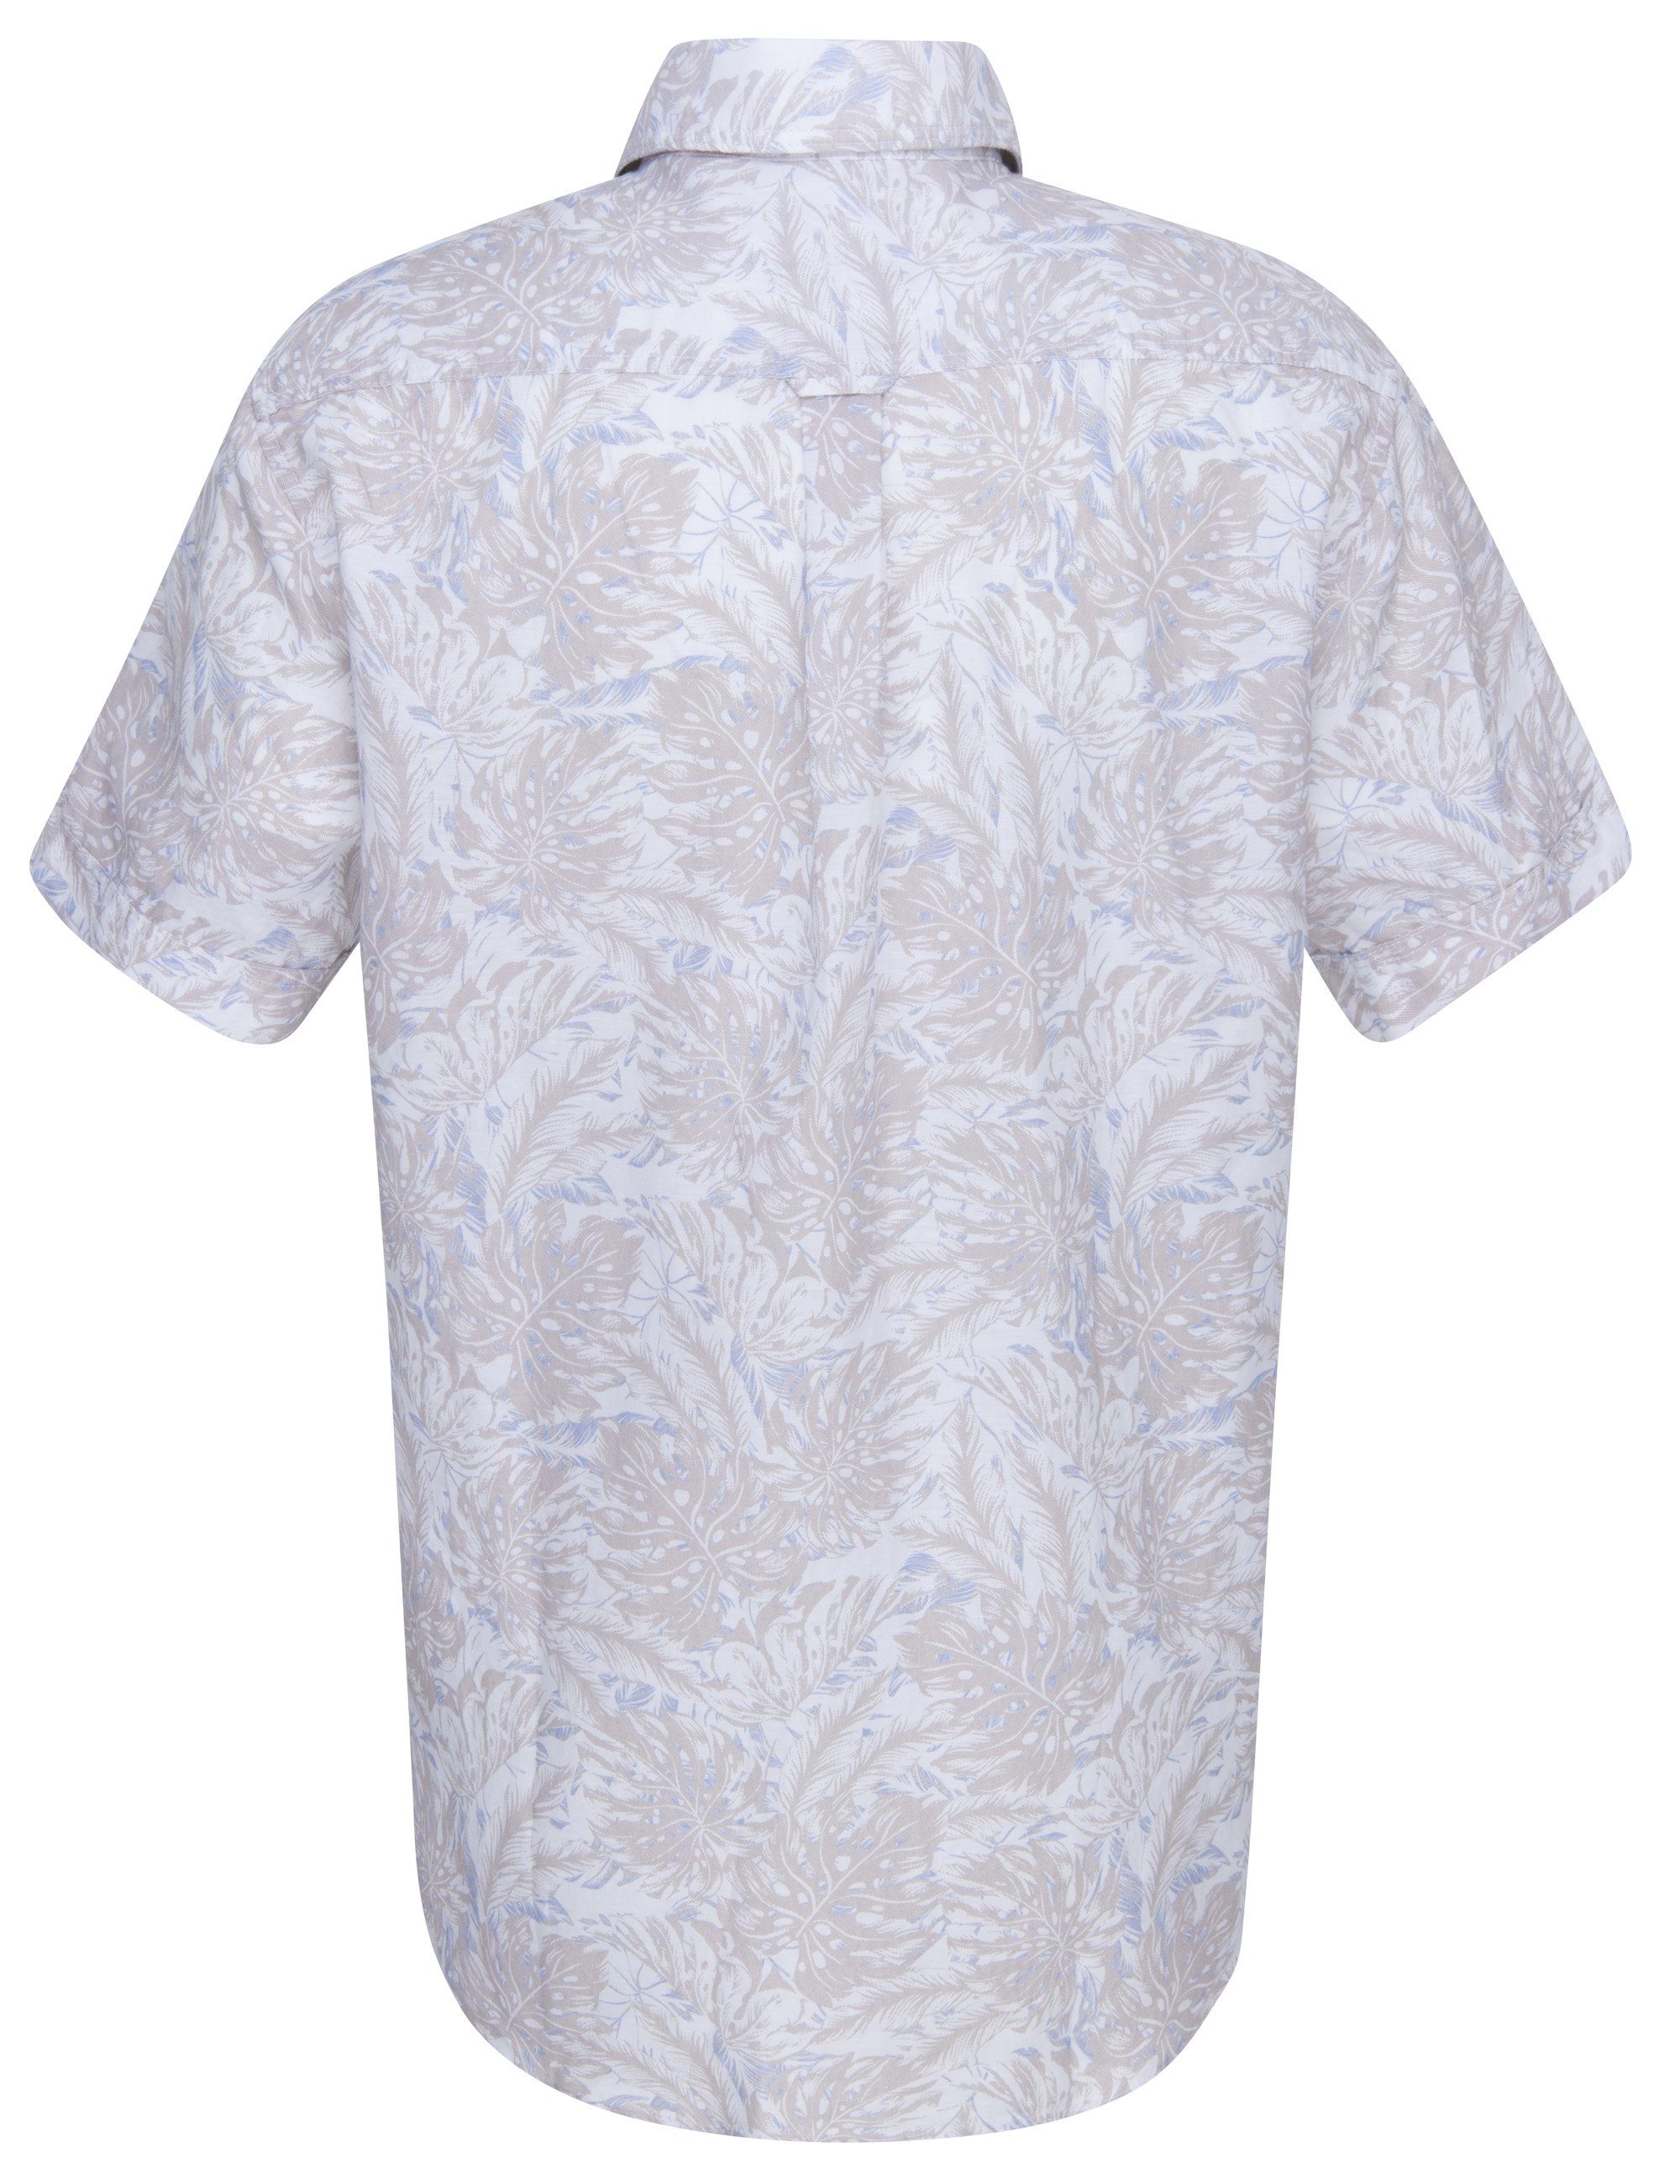 Eterna Klassische Bluse ETERNA floral REGULAR beige Kurzarm leinen SHIRT FIT Hemd UPCYCLING